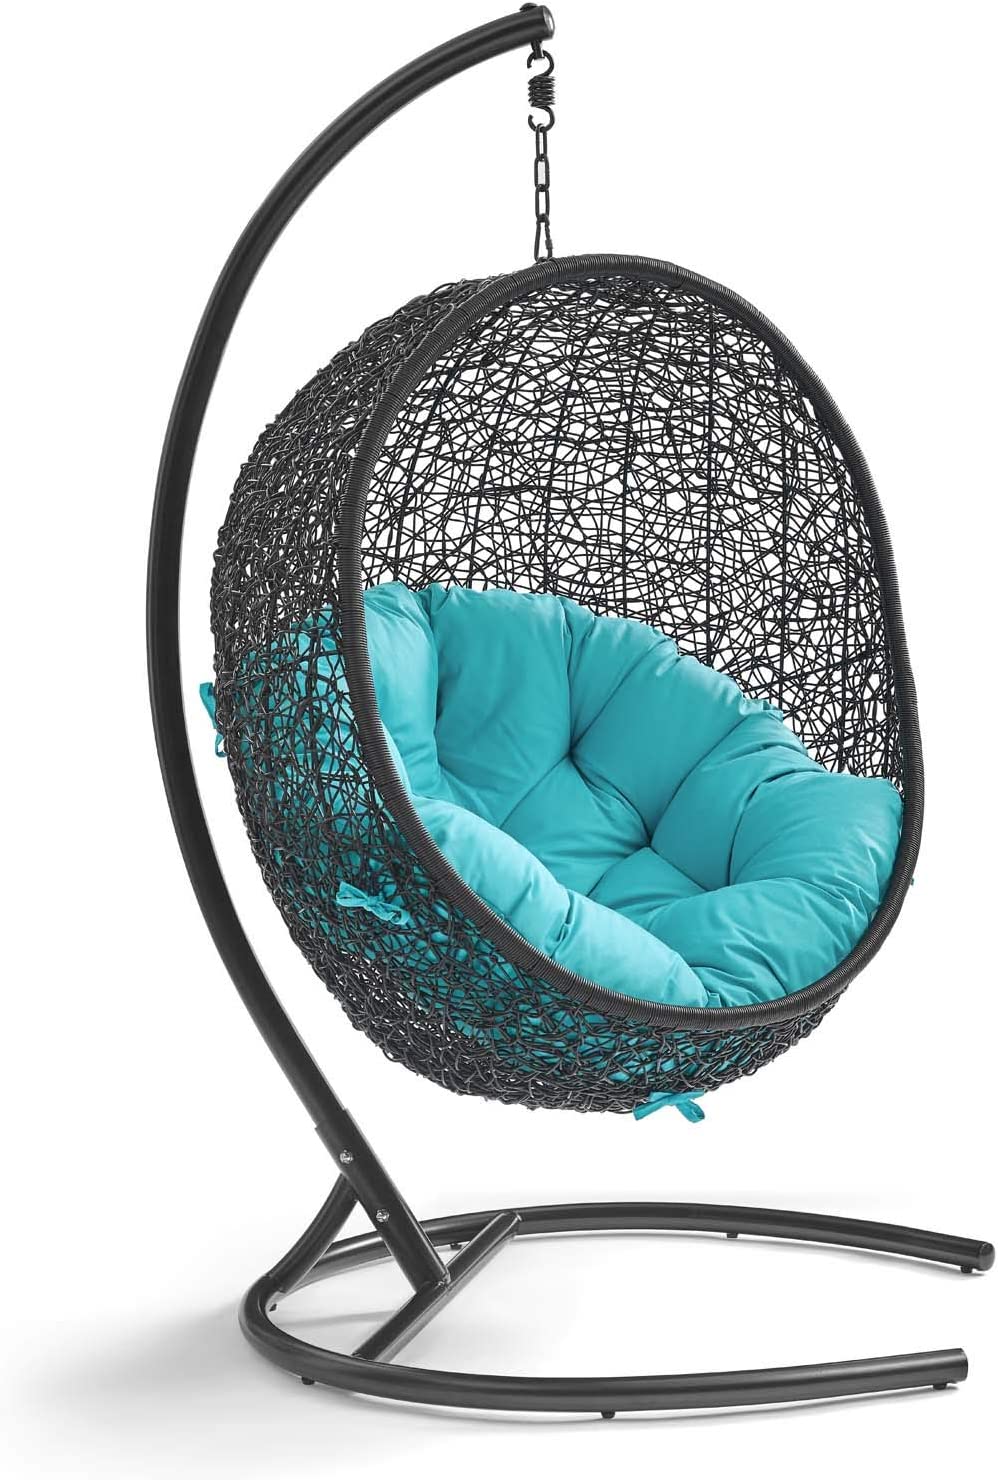 Modway Encase Backyard Egg Chair